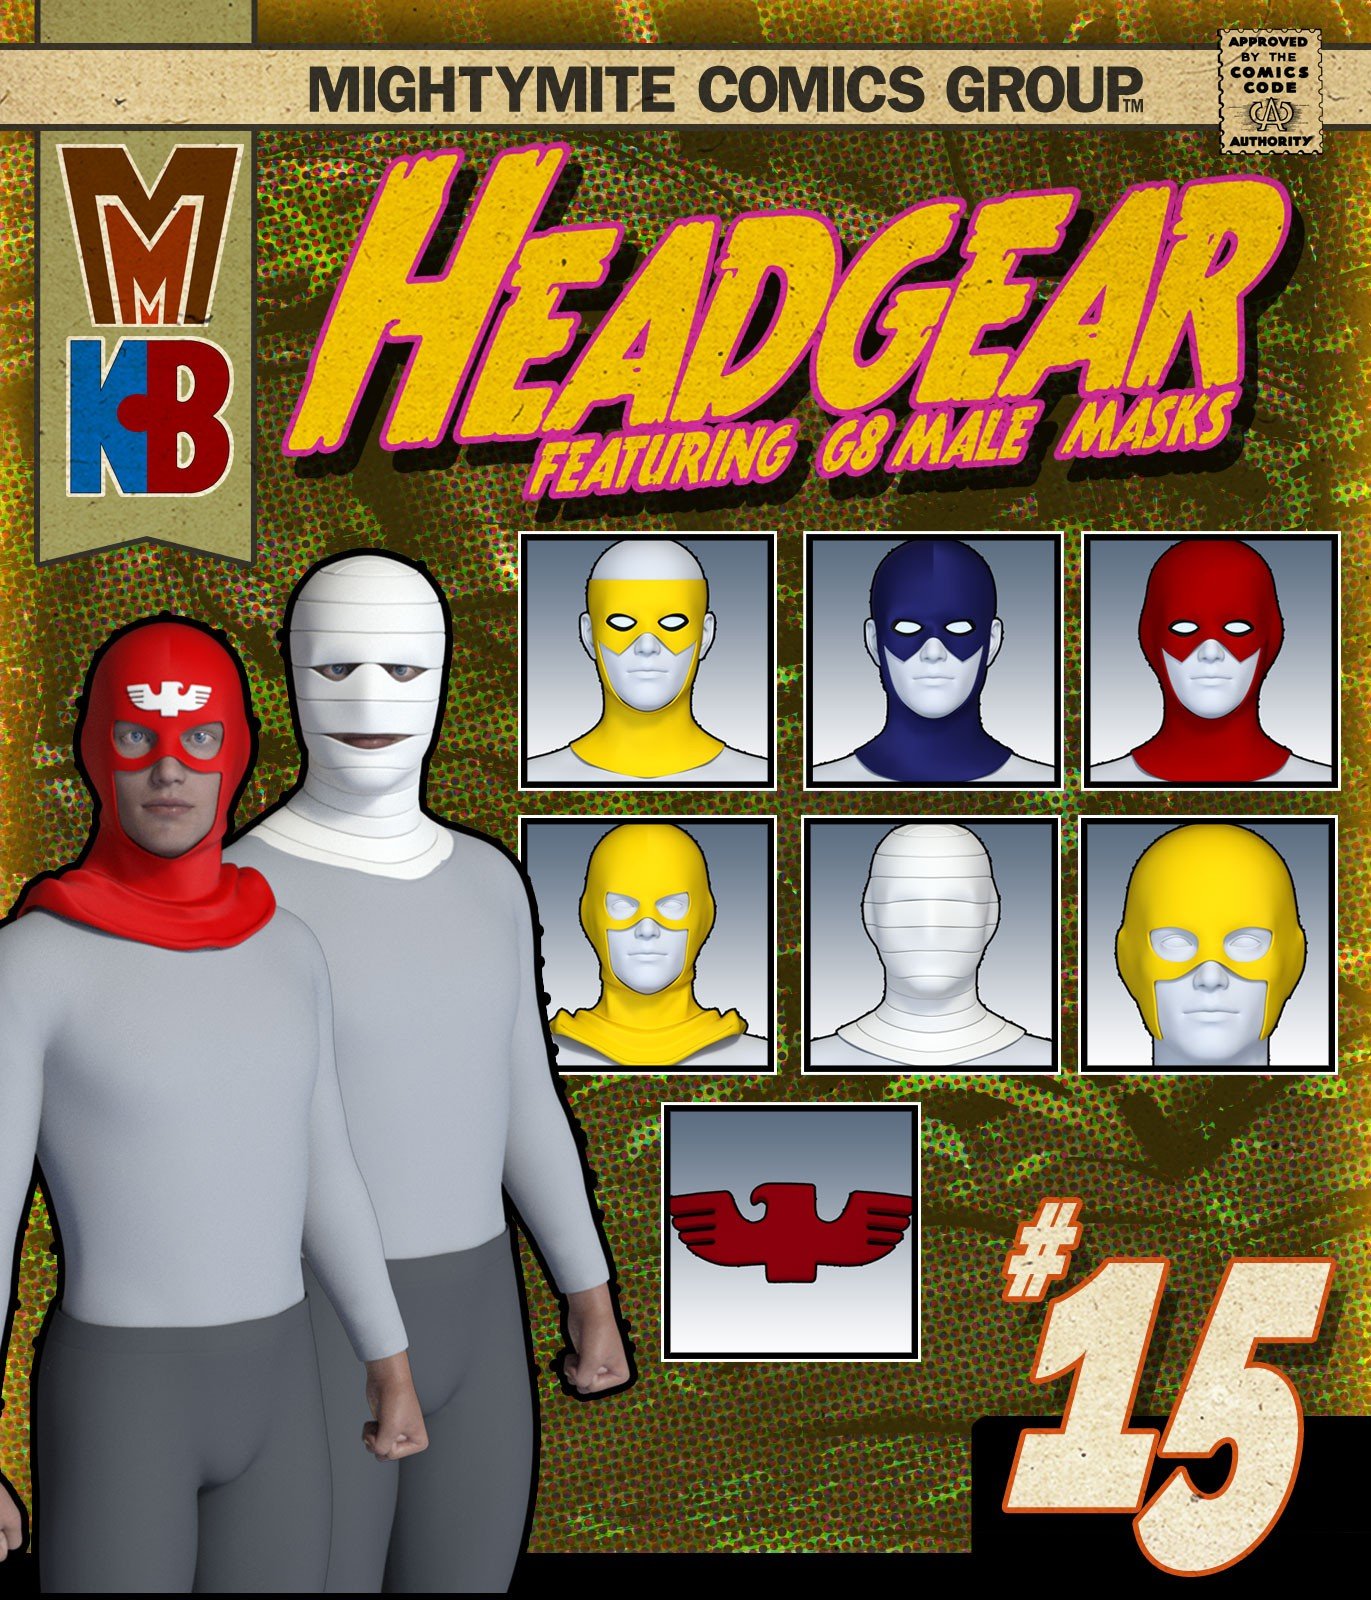 Headgear 015 MMKBG8M by: MightyMite, 3D Models by Daz 3D